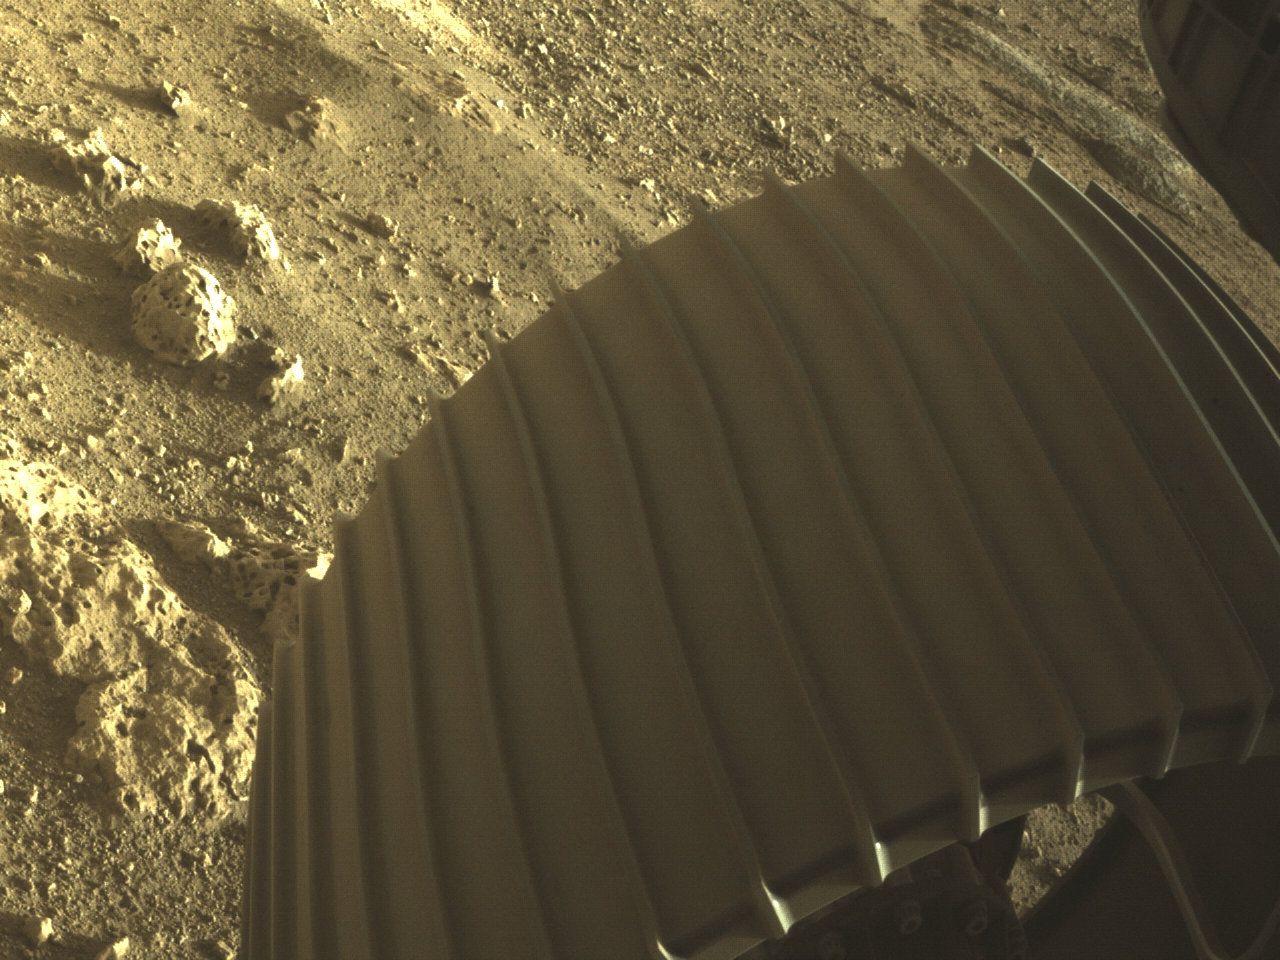 Imágenes en color de Marte, captadas por Perseverance, el nuevo robot de la NASA en ese planeta